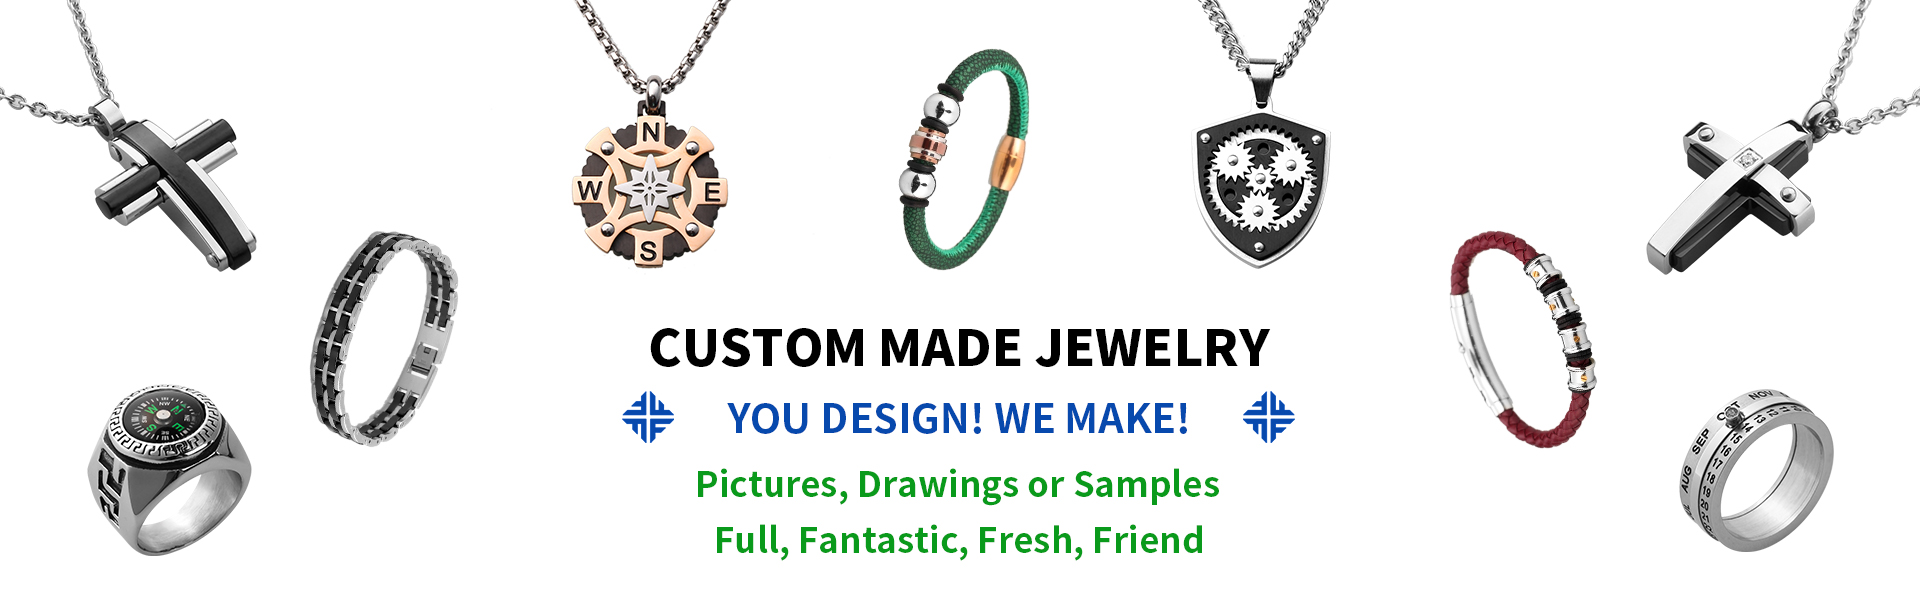 joias de aço inoxidável, joias e acessórios da moda, atacadista e fabricante de joias,Dongguan Fullten Jewelry Co., Ltd